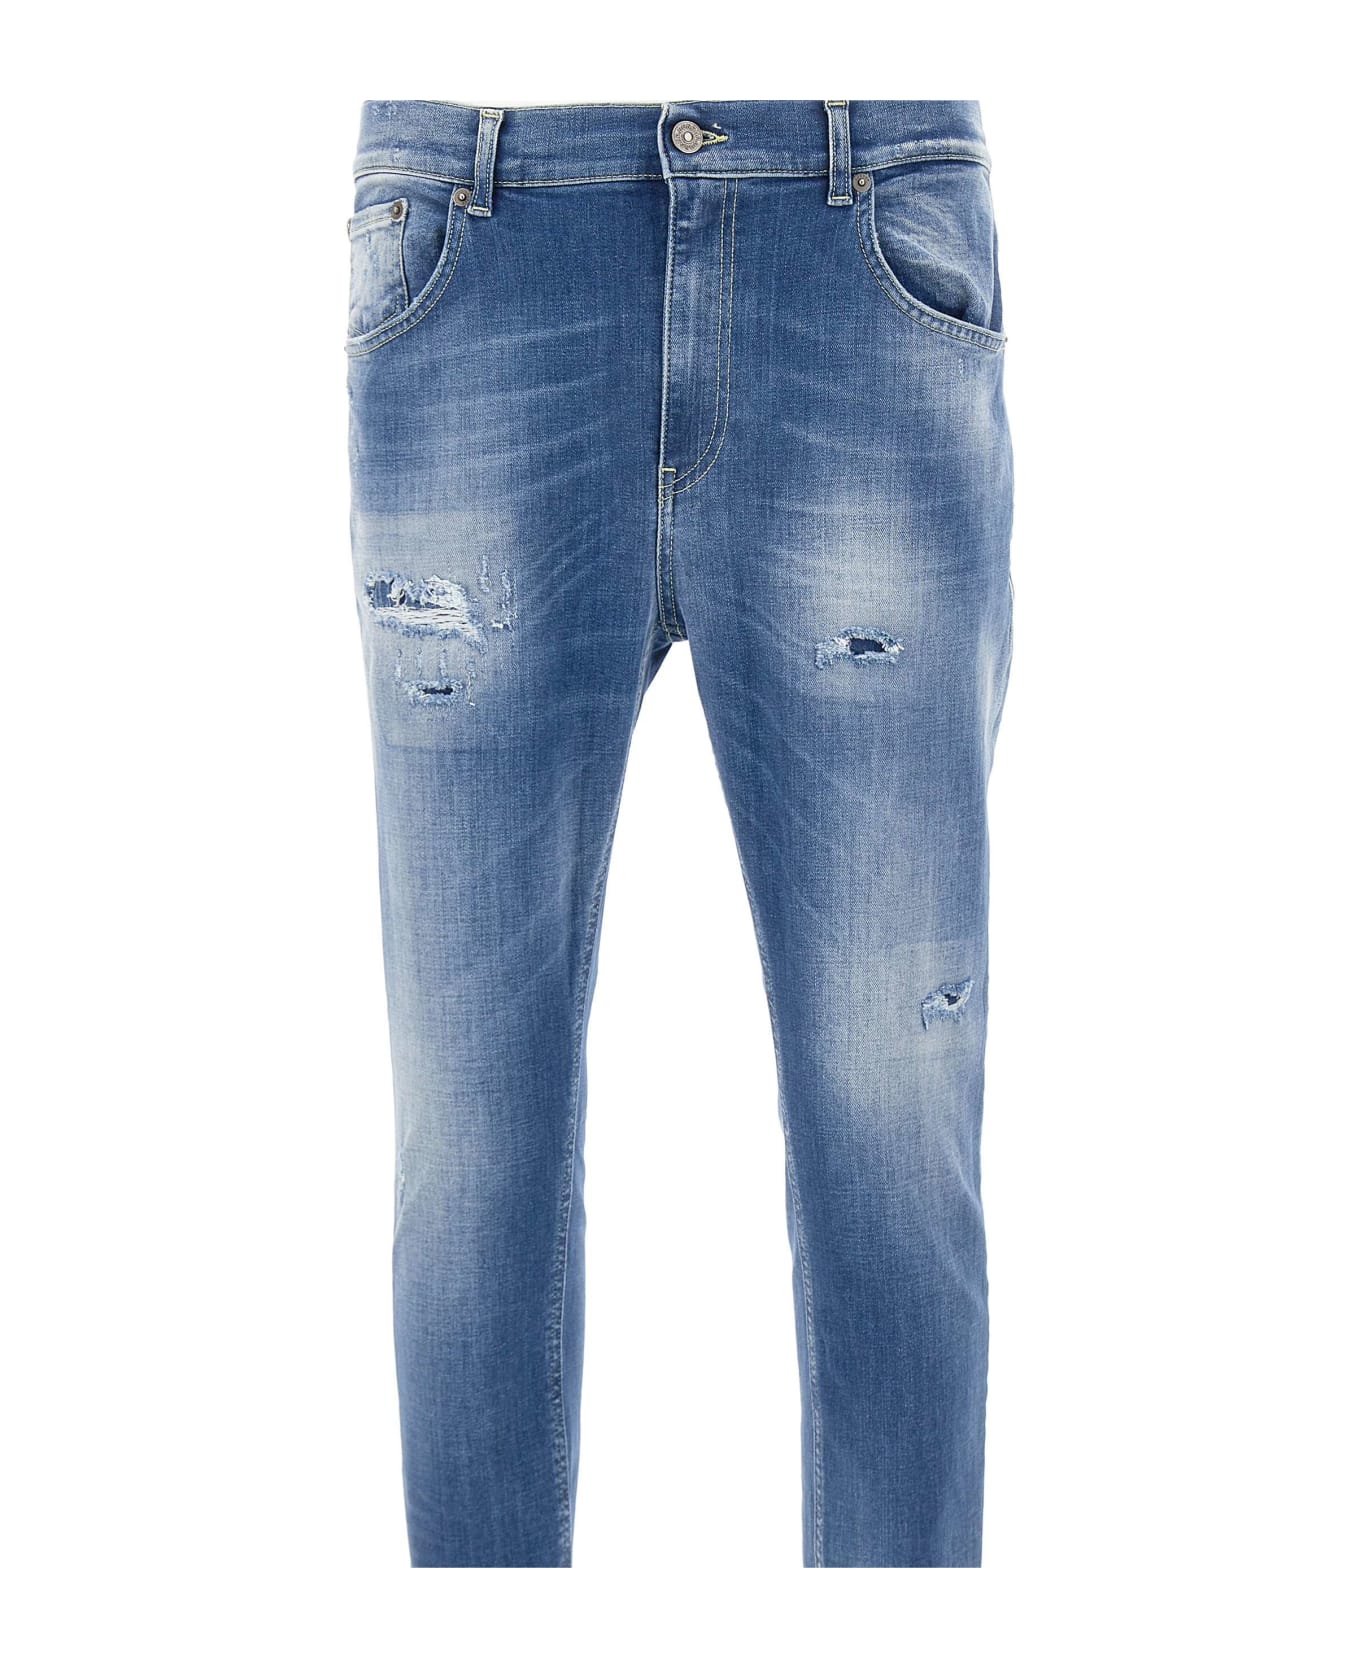 Dondup "alex"jeans - BLUE